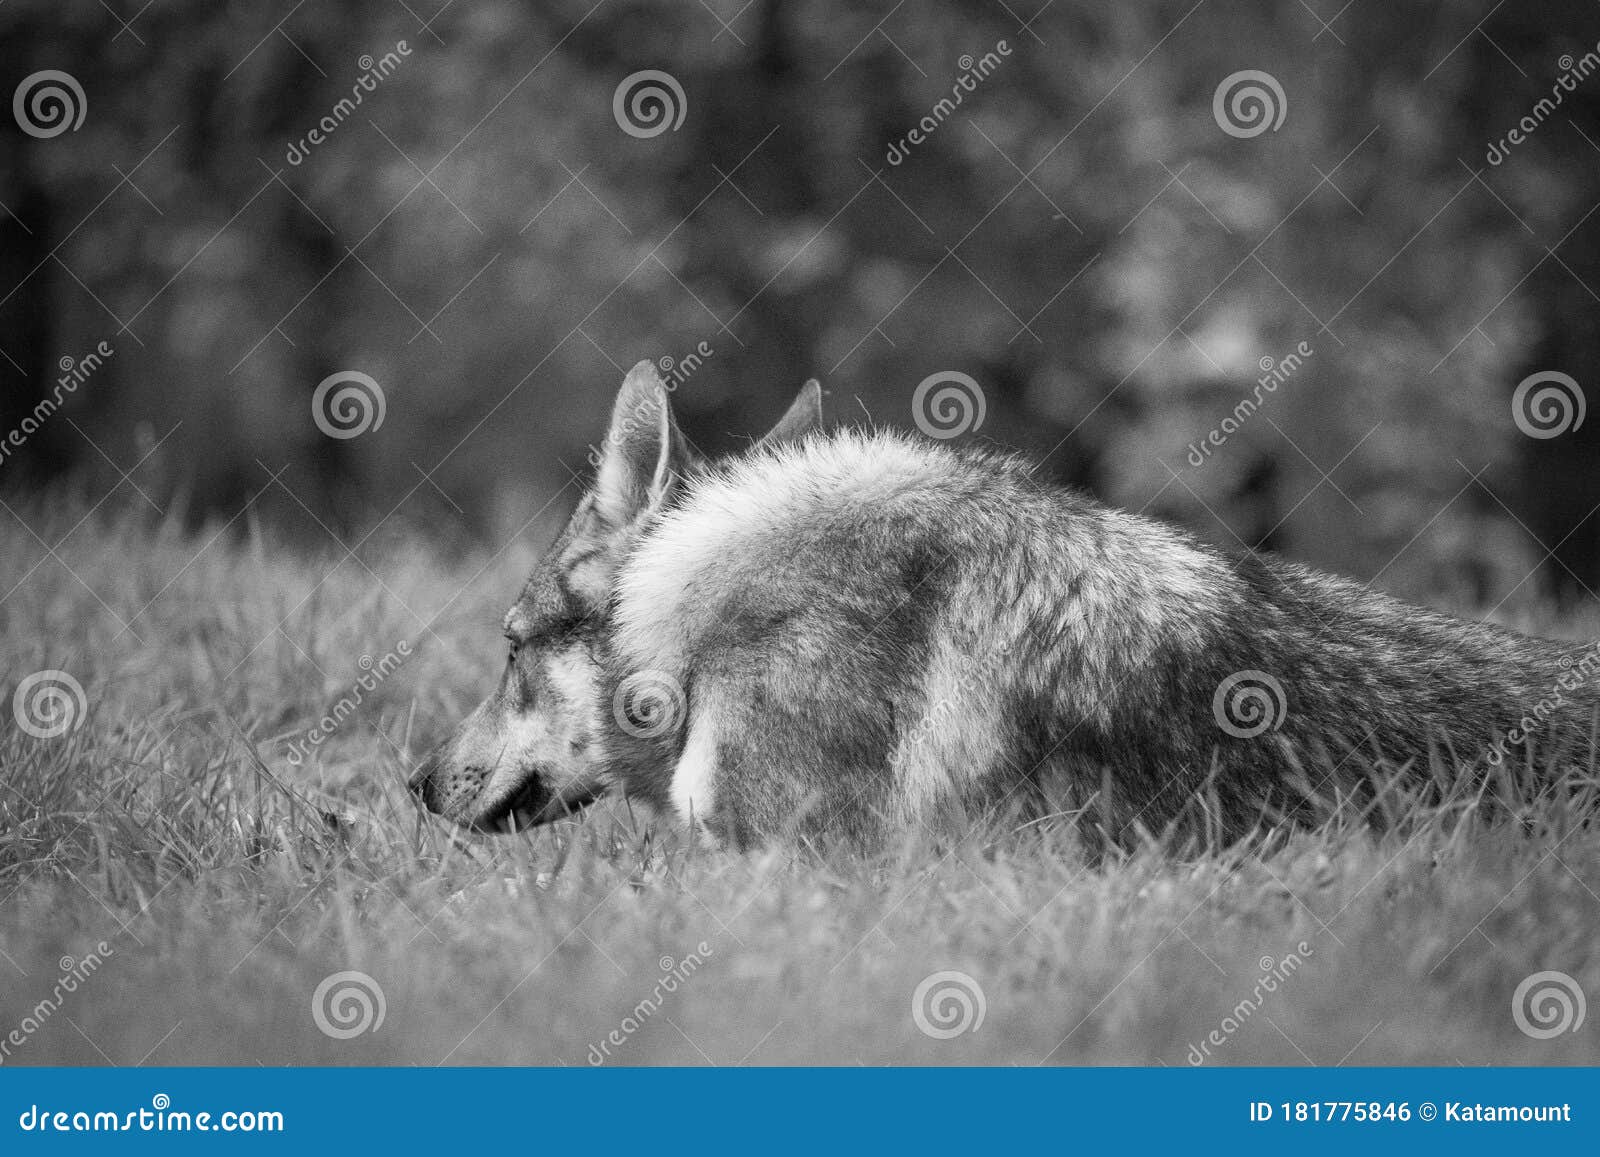 Czechoslovakian Wolfdog Dog Is Watching Stock Photo Image Of White Fourlegged 181775846